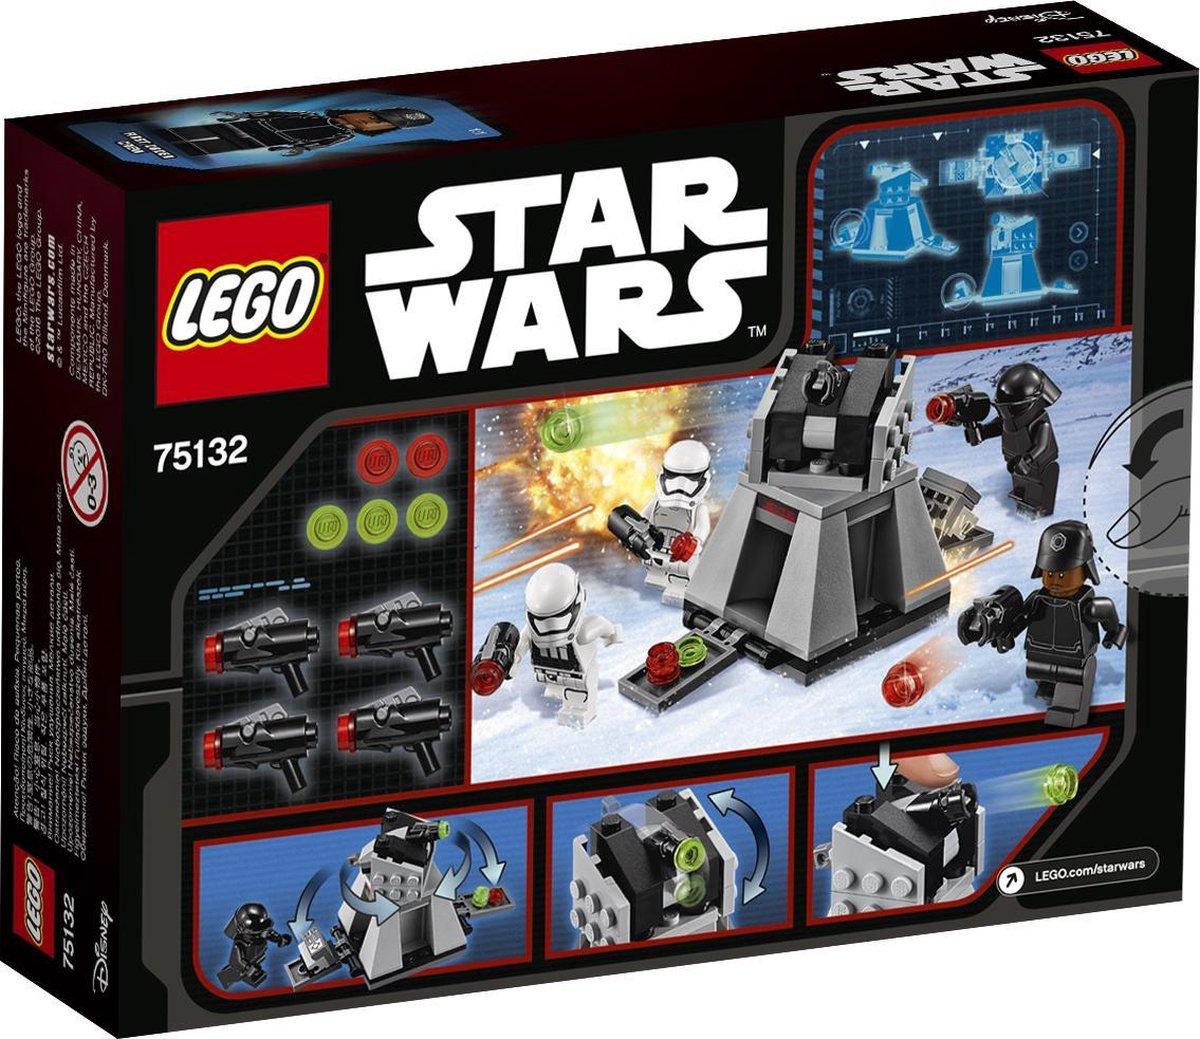 LEGO First Order Battle Pack 75132 StarWars LEGO STARWARS @ 2TTOYS LEGO €. 24.99